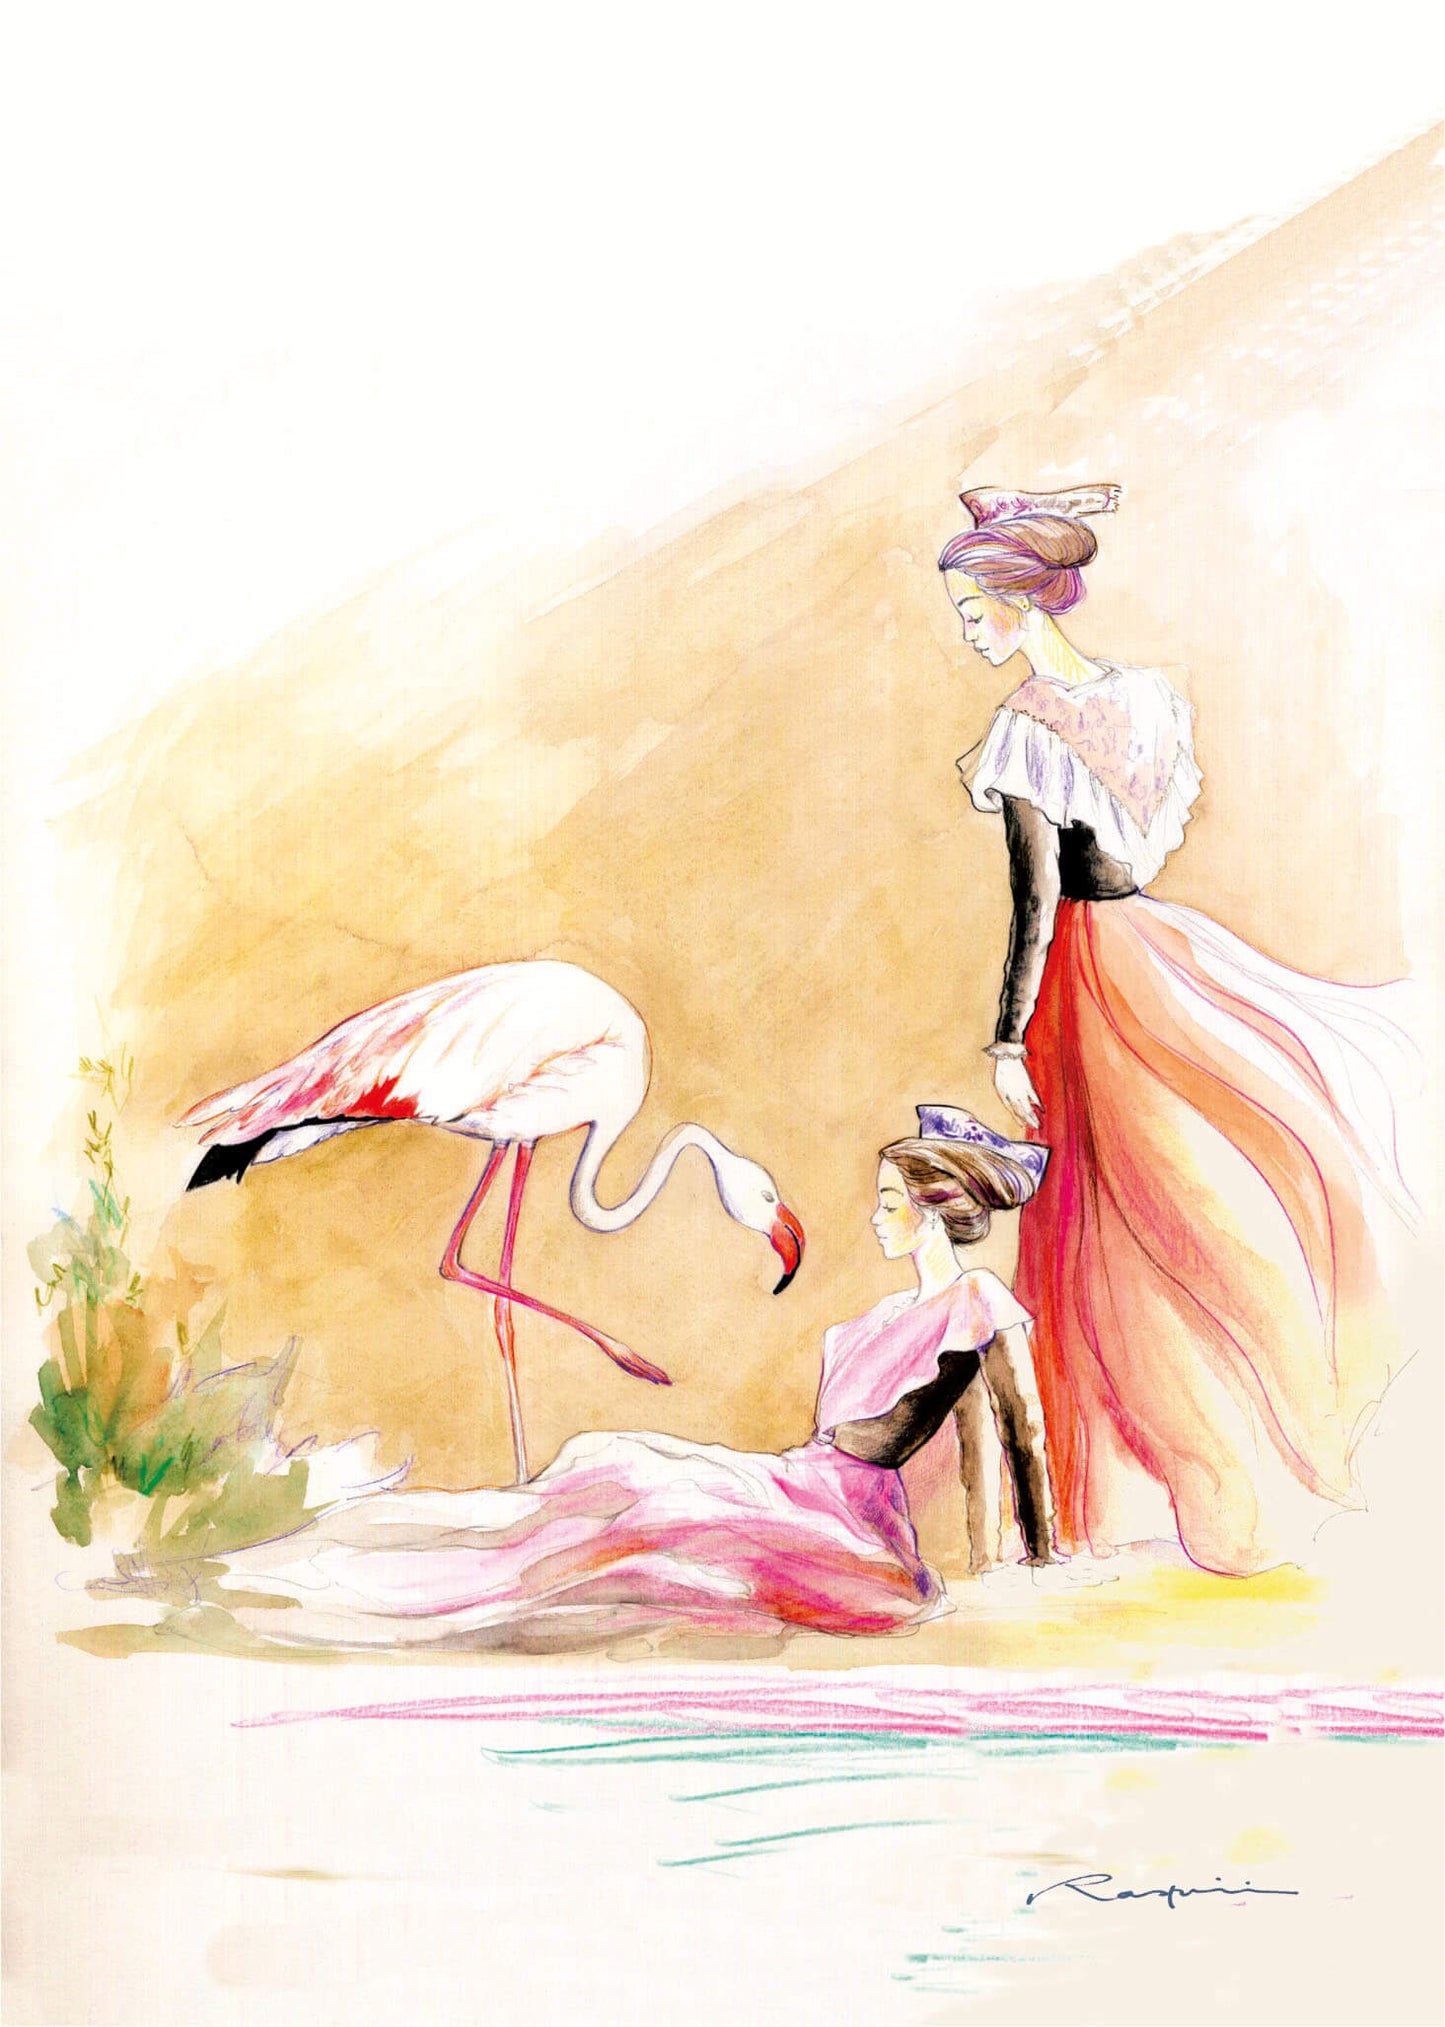 Carte Postale d'Art : "Croquis d'Arlésiennes et flamant rose"